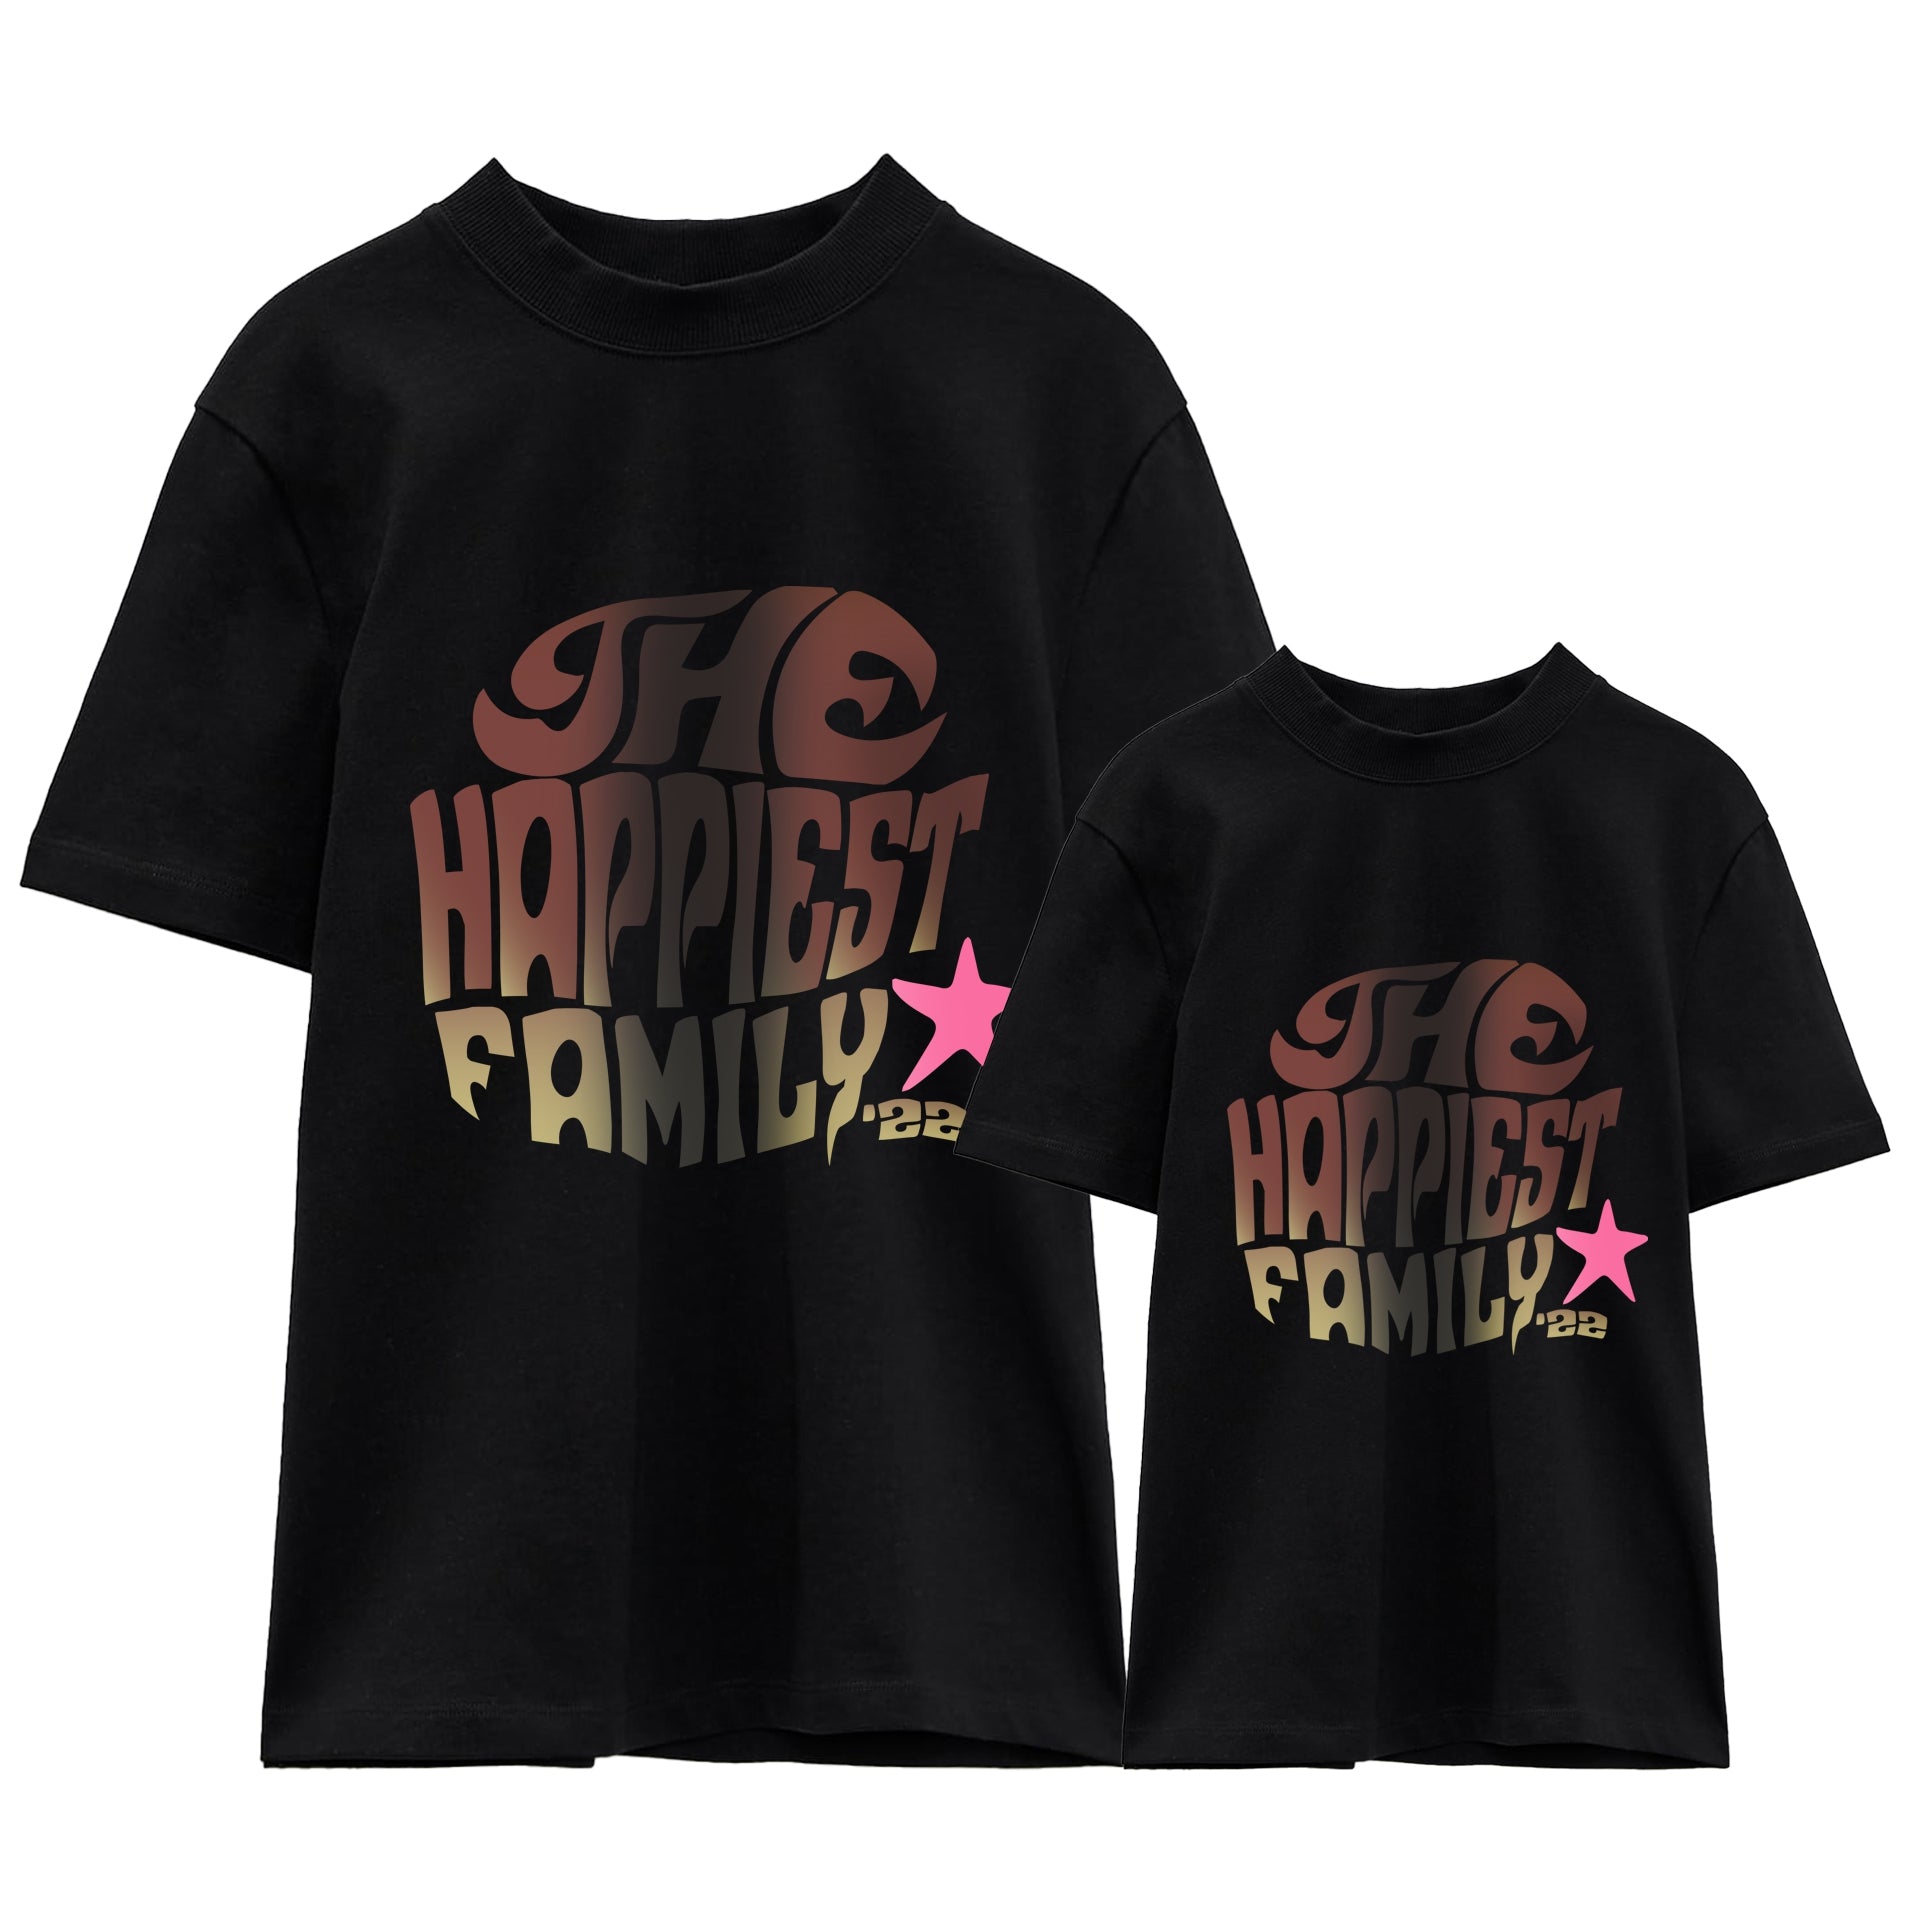 Camiseta The Happiest Family